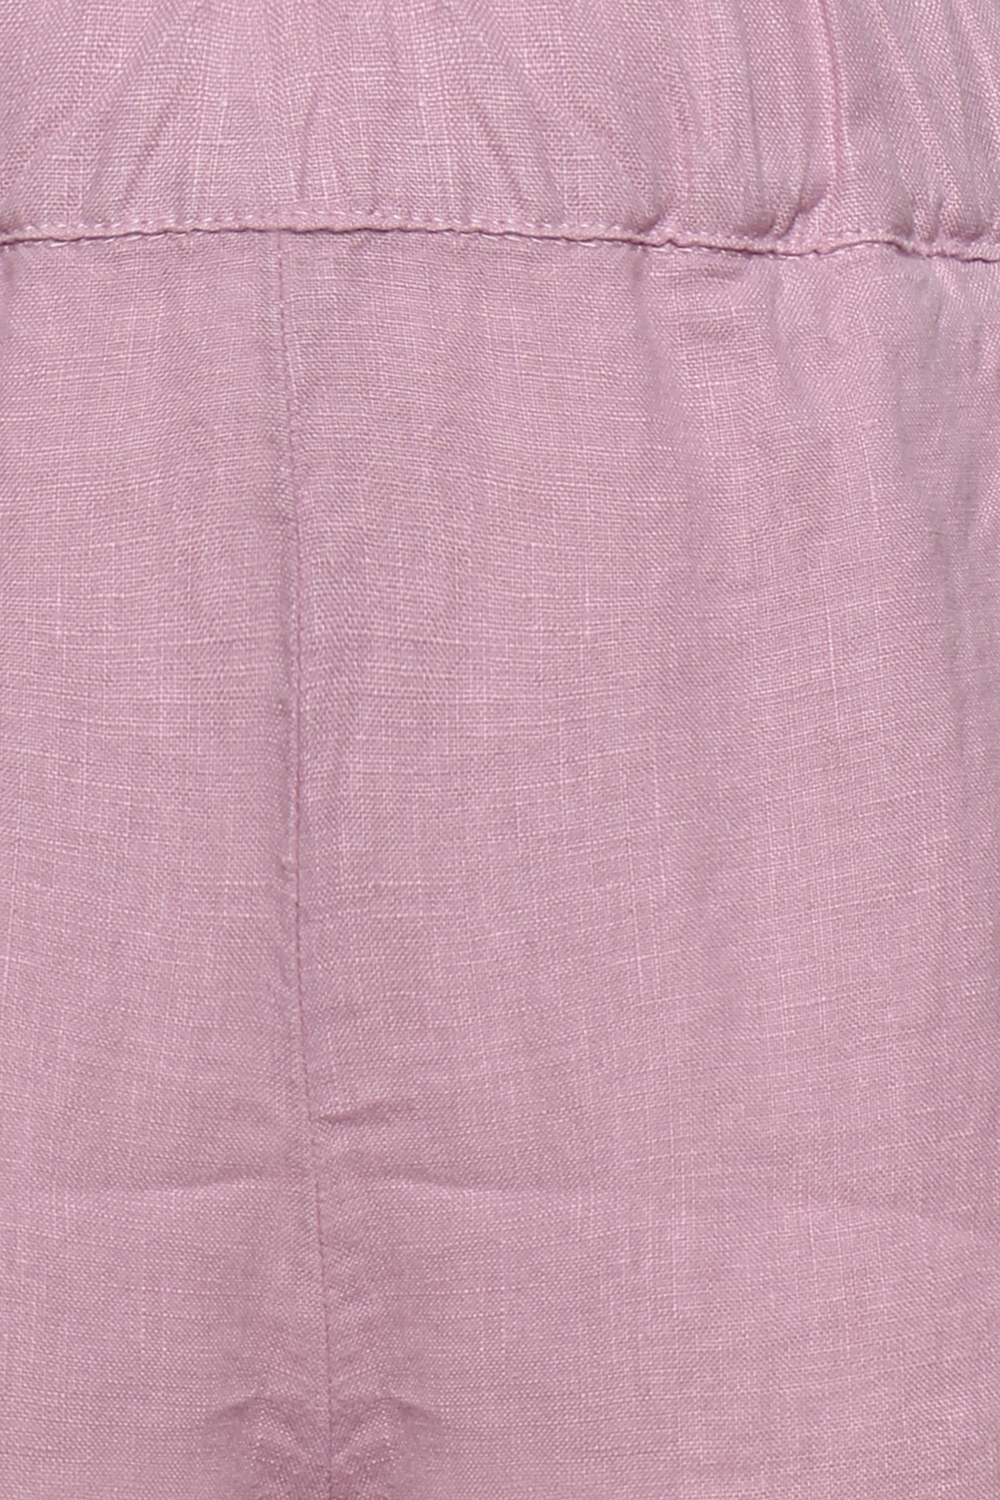 Розовые брюки из льна